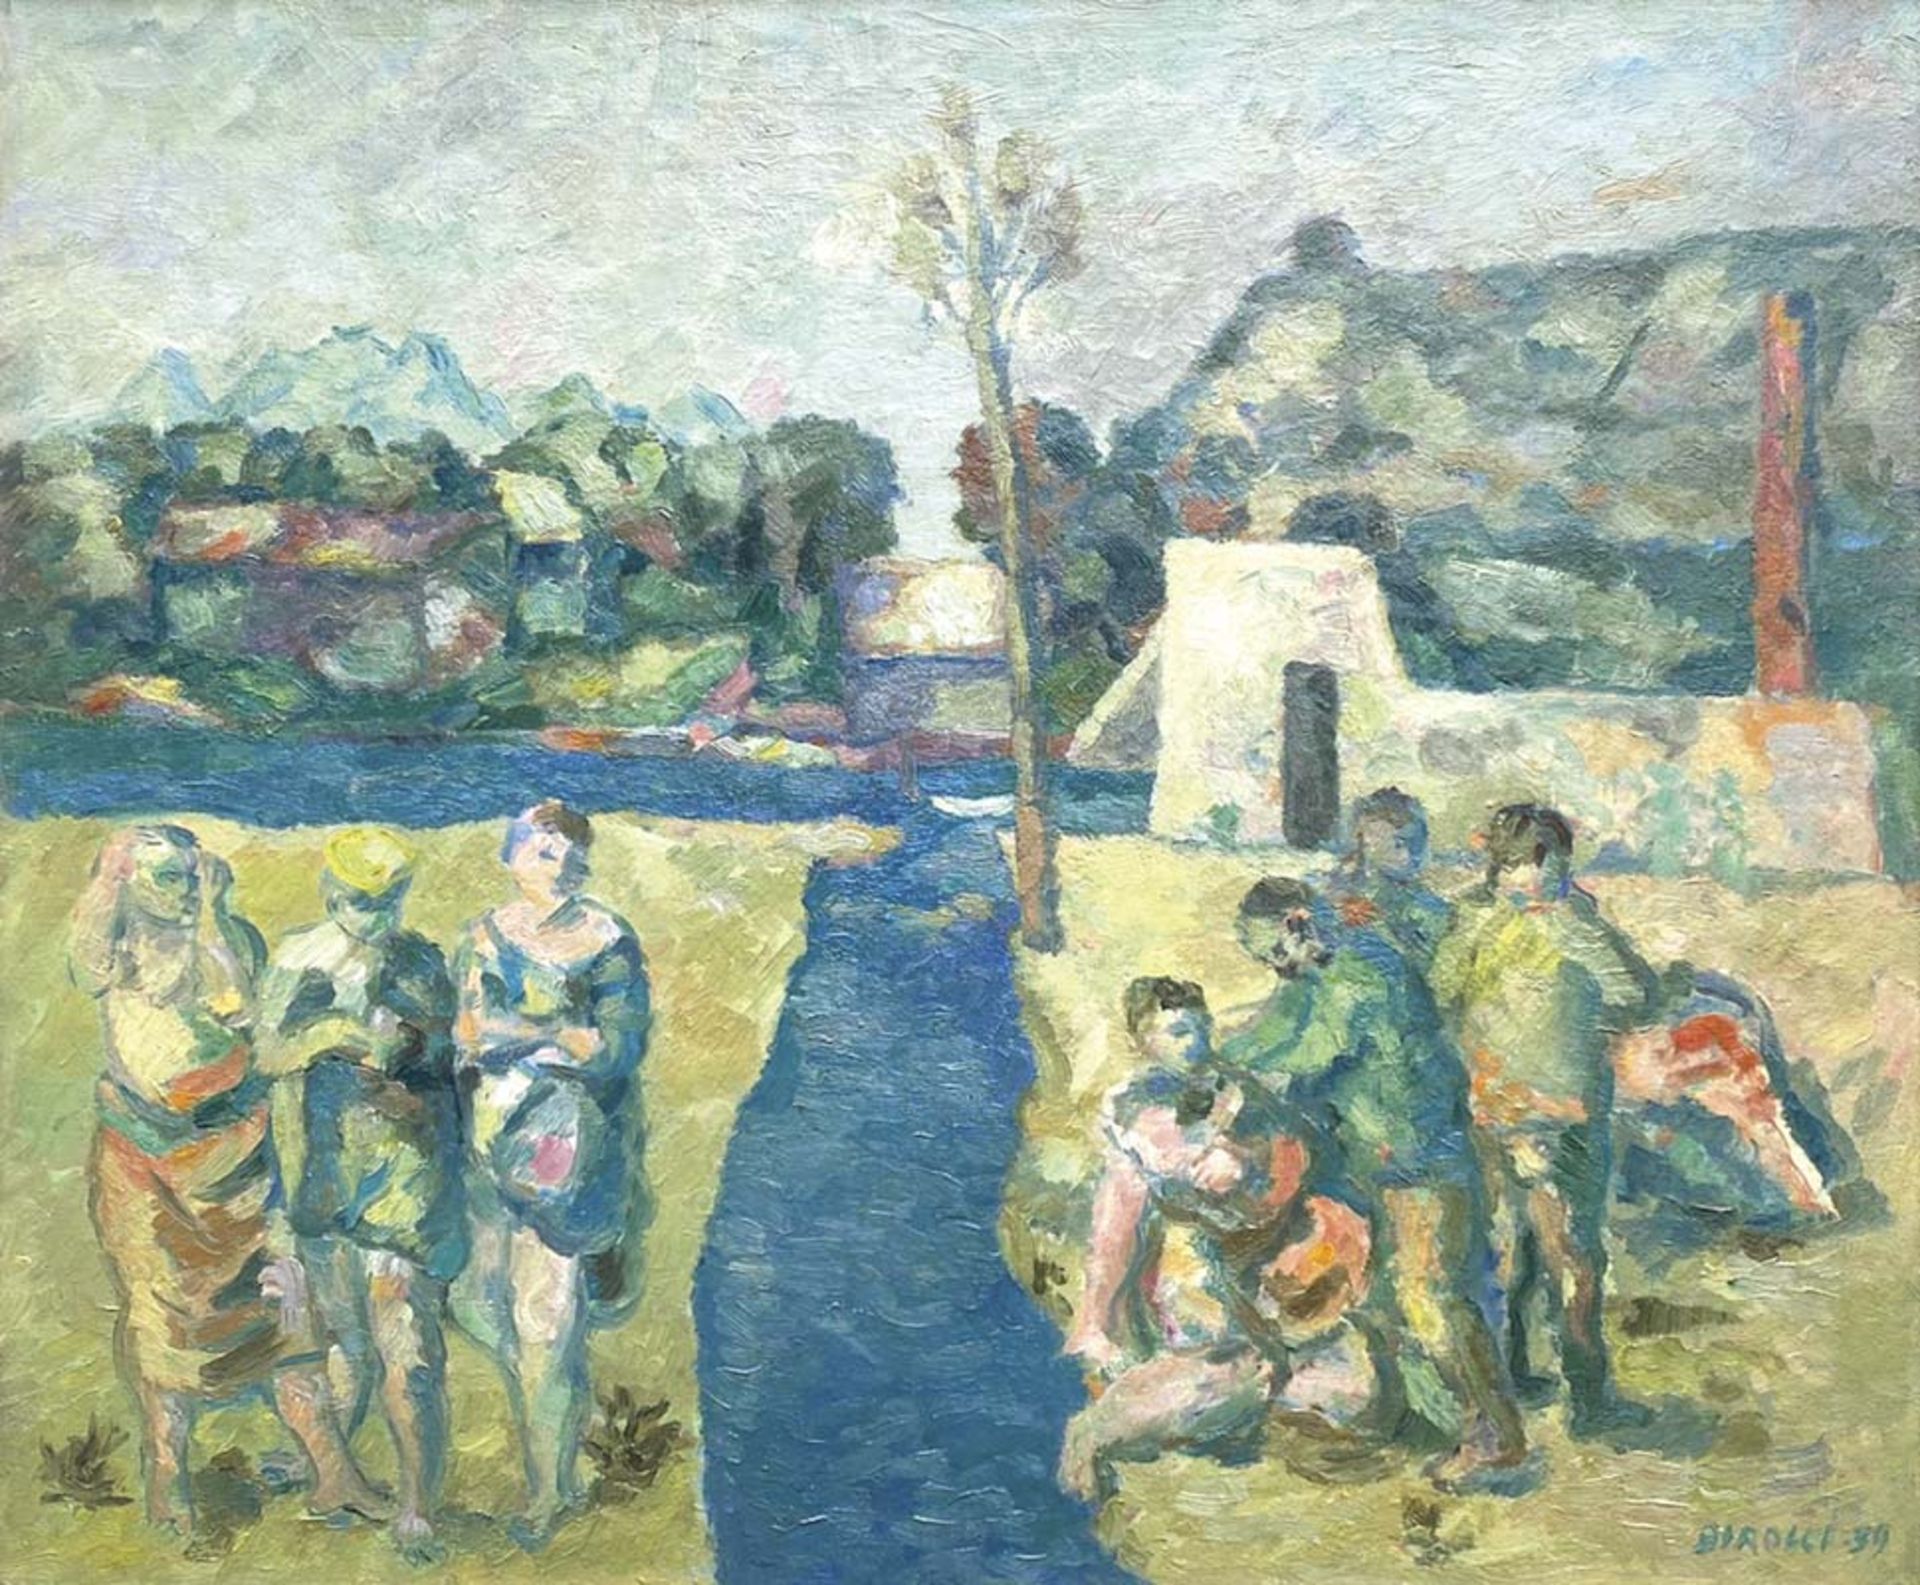 Renato Birolli - Le due rive, 1939